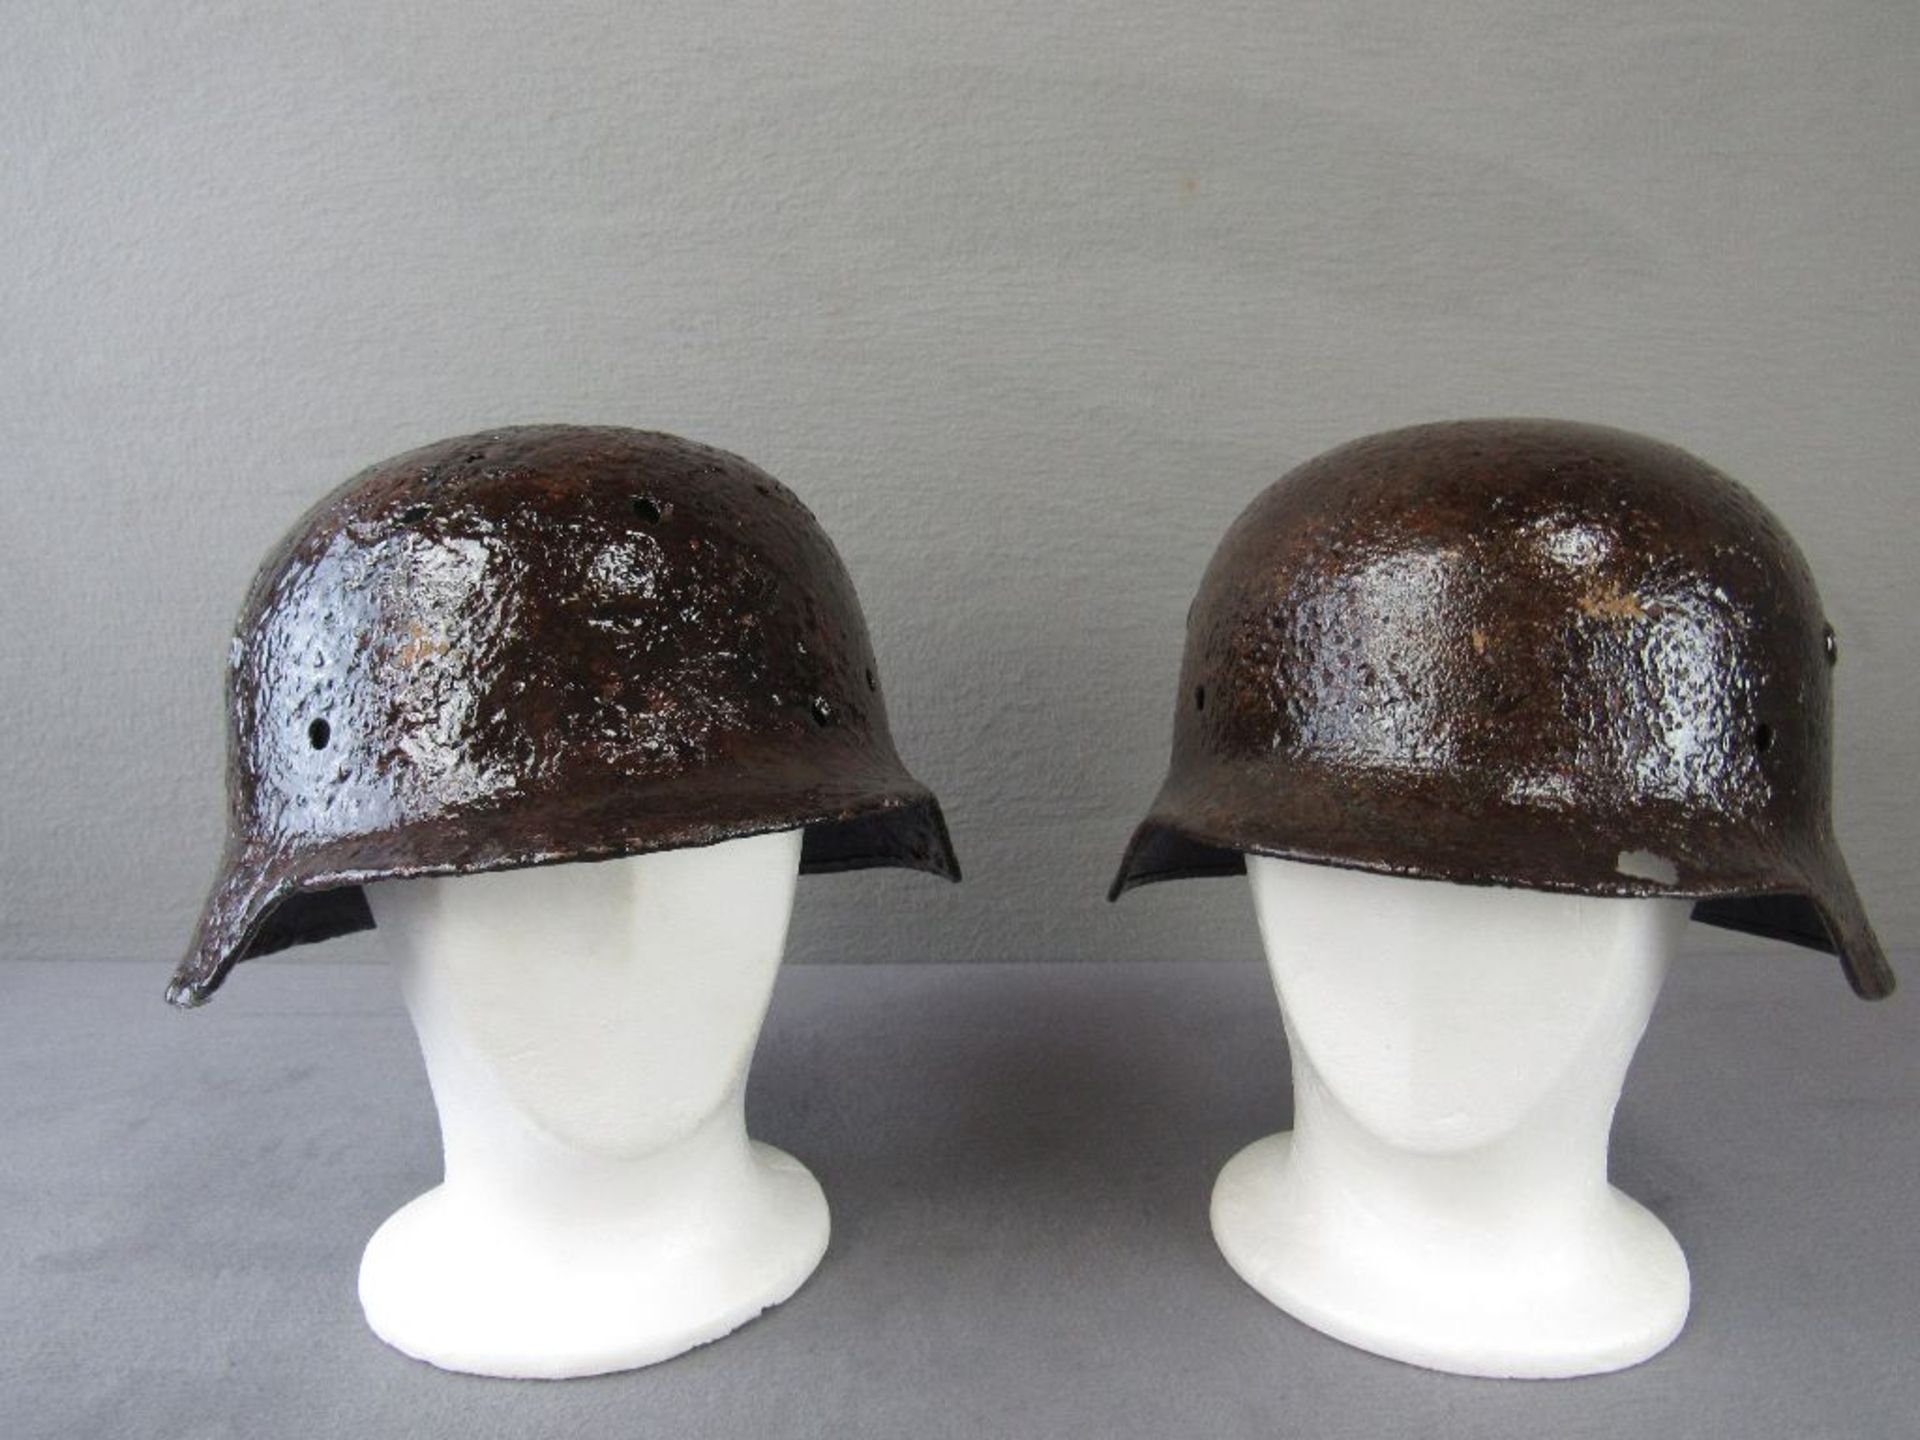 Zwei Stahlhelme M35 2.WK Bodenfunde konserviert Wappen teilweise erkennbar